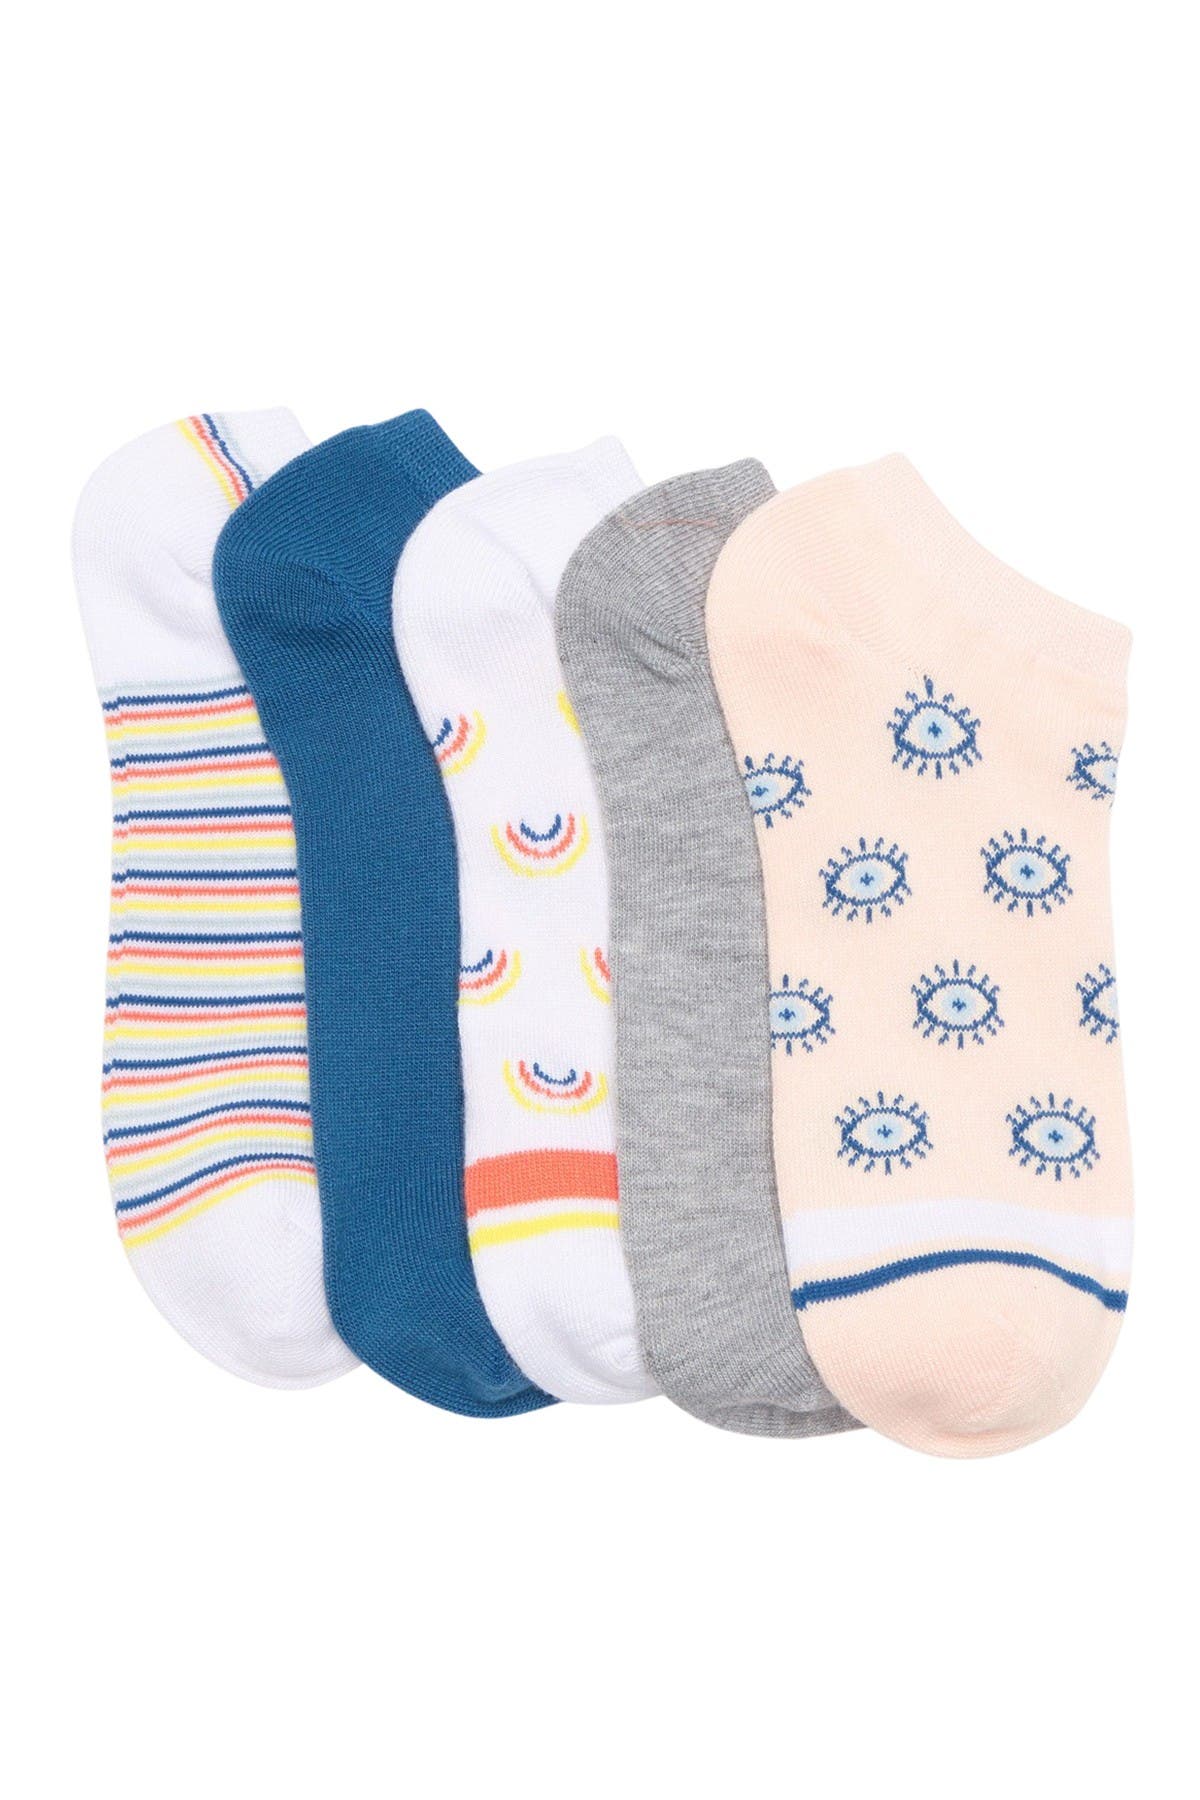 Abound Fun Ankle Socks In White Varsity Stripe